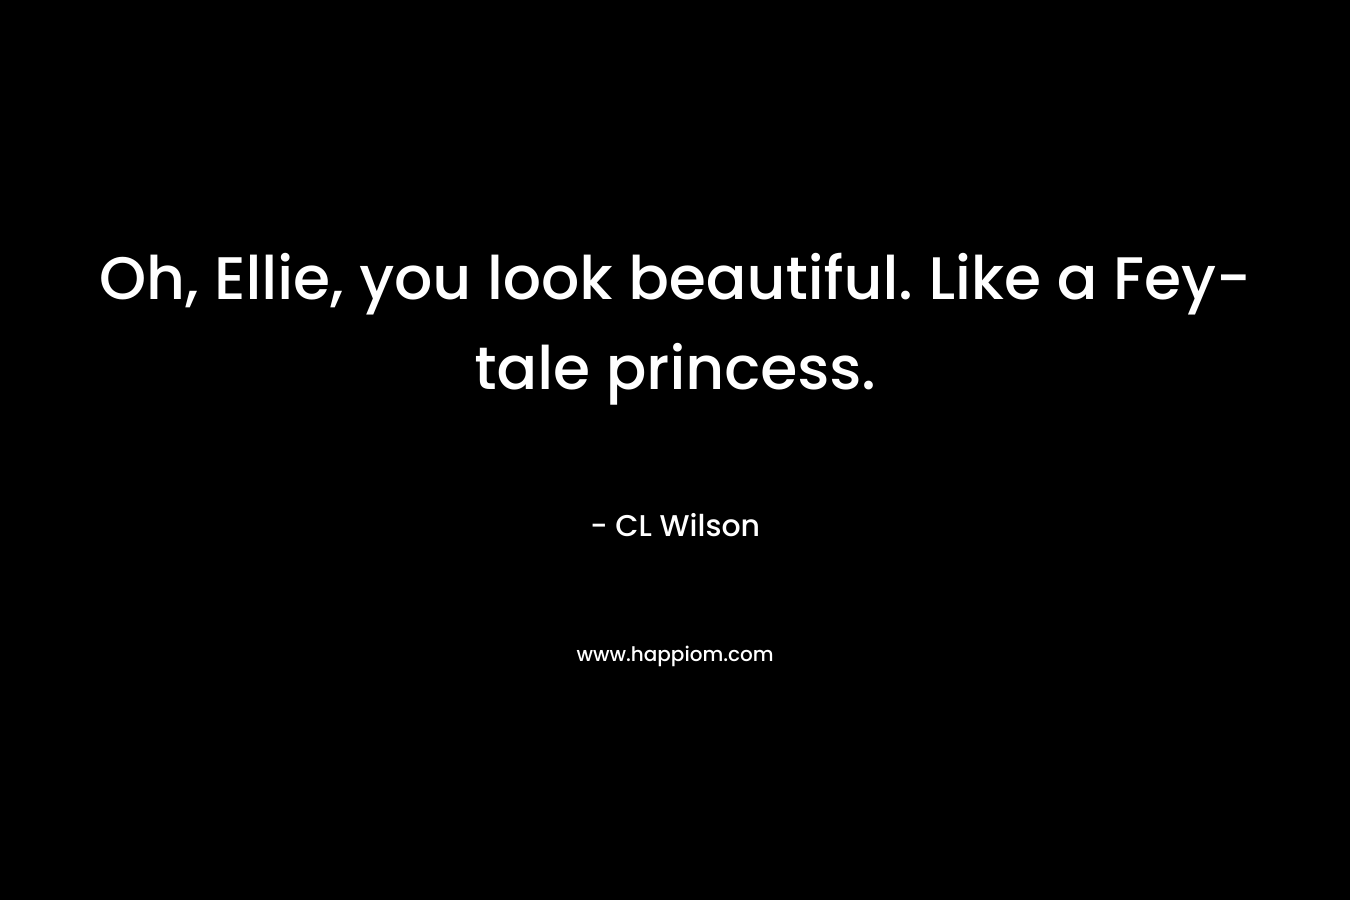 Oh, Ellie, you look beautiful. Like a Fey-tale princess.